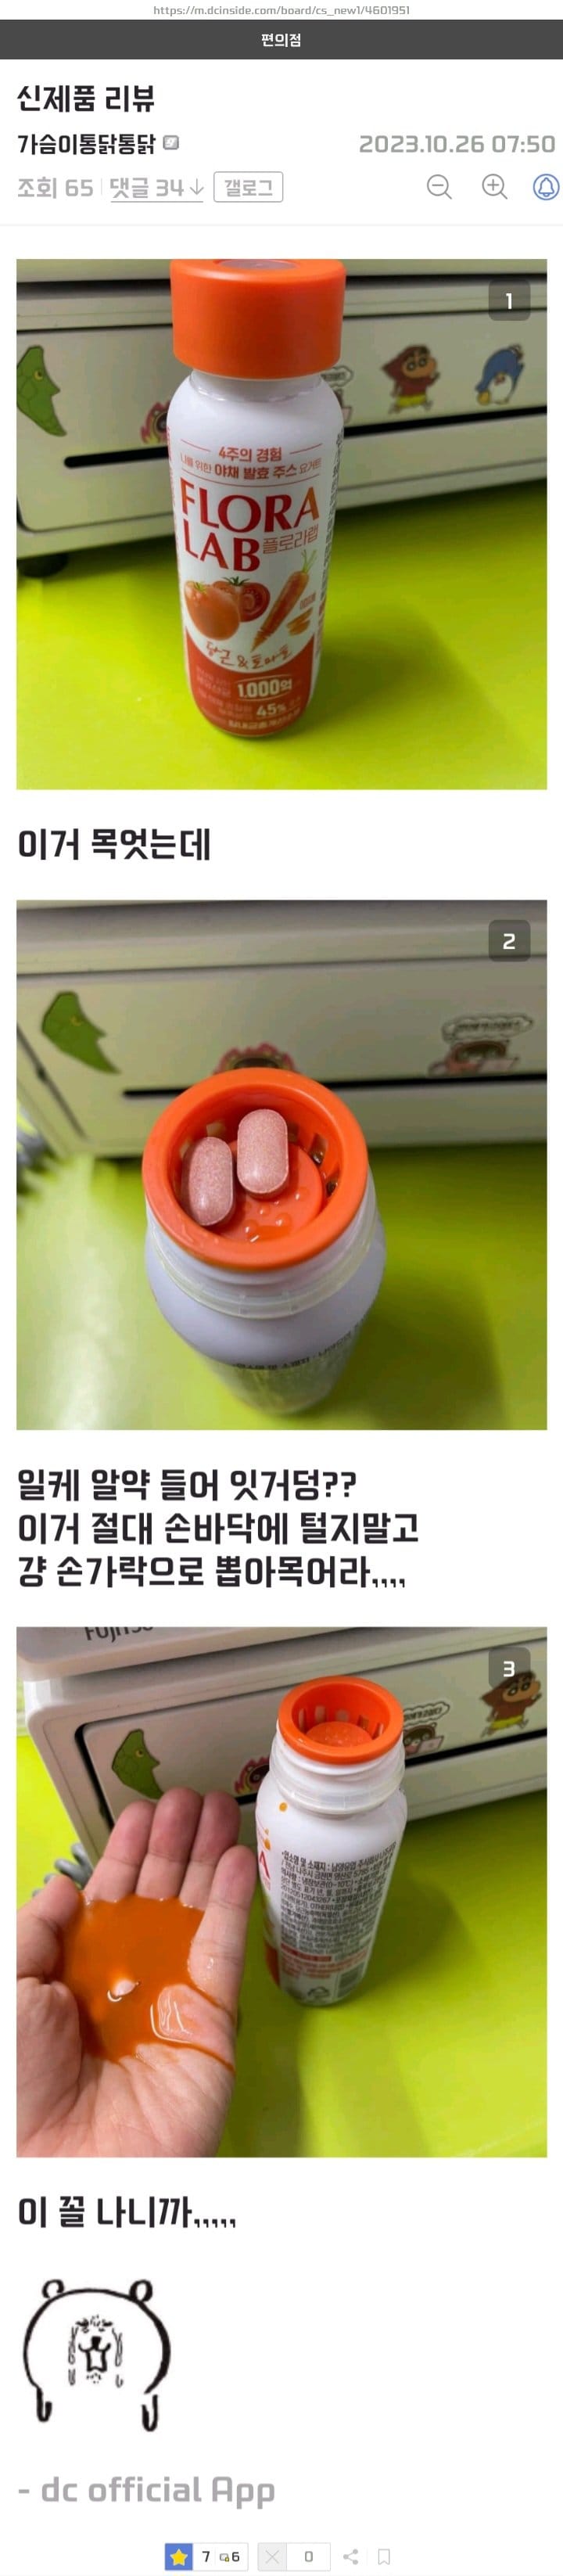 비타민 동봉 음료 신제품 후기.jpg